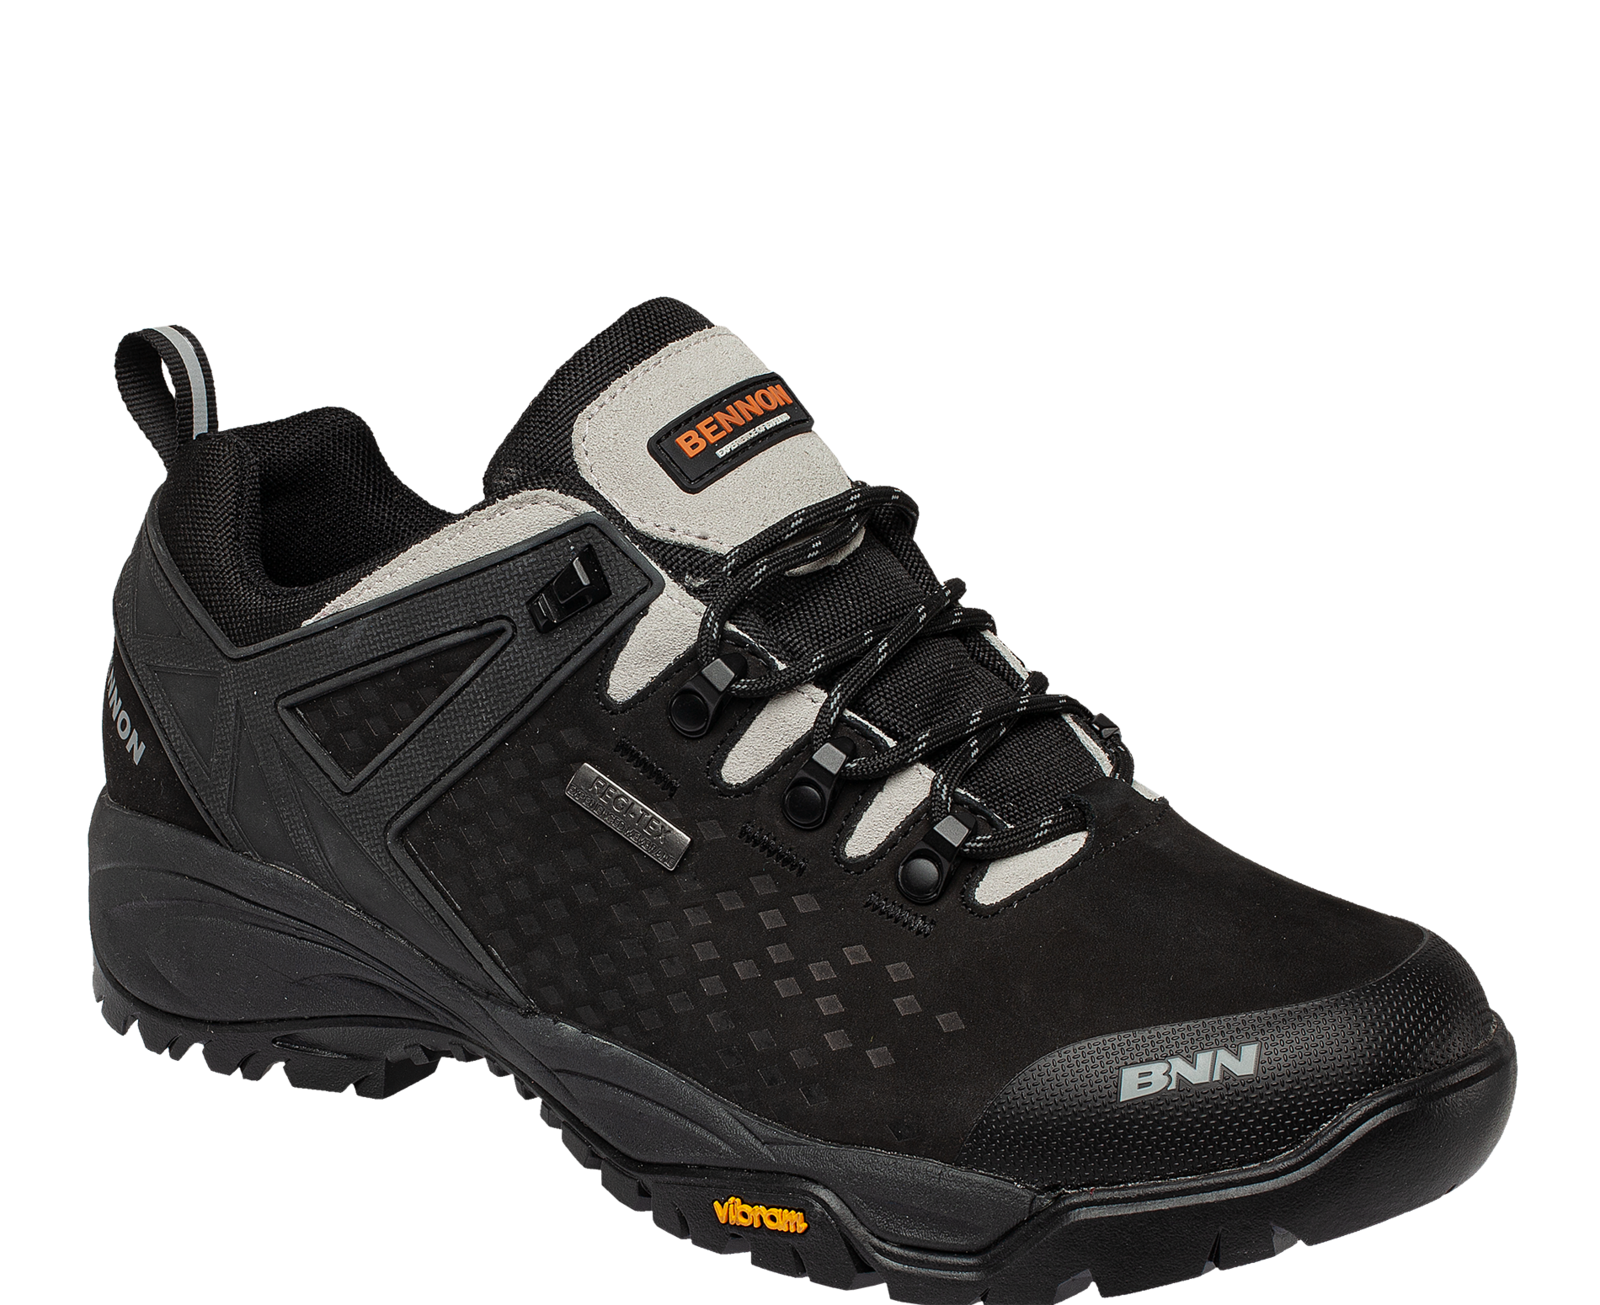 Outdoorová obuv Bennon Recado XTR O2 s membránou - veľkosť: 49, farba: čierna